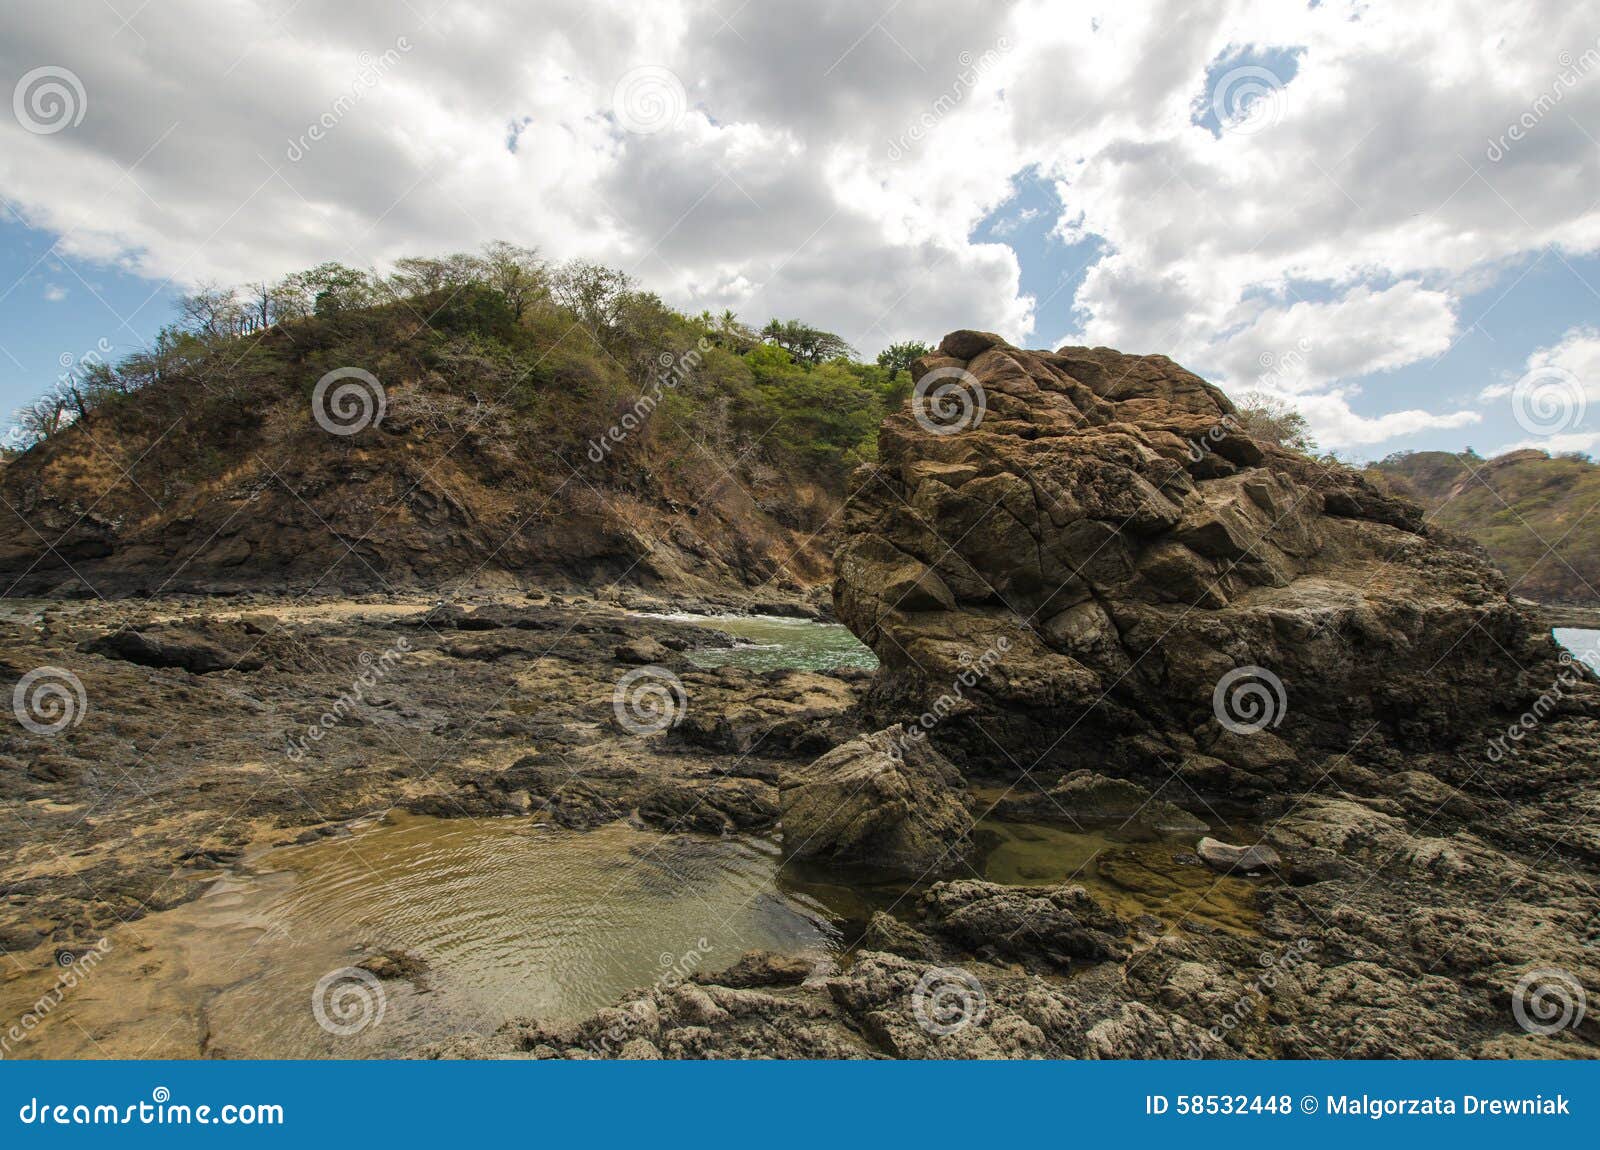 ocotal beach in guanacaste - costa rica